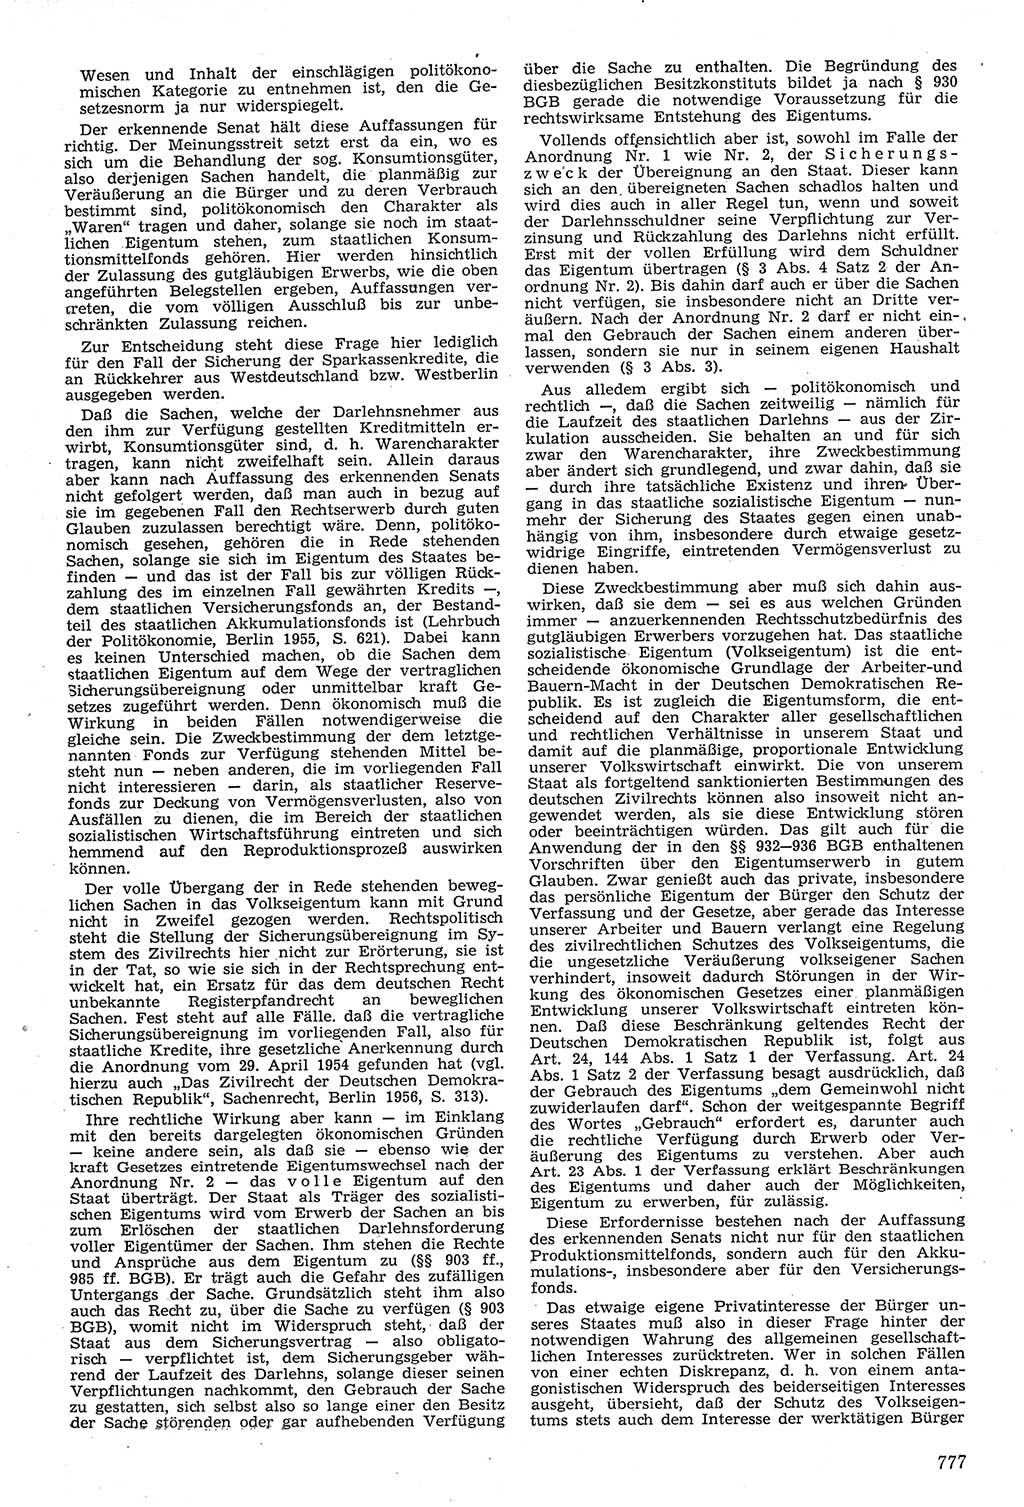 Neue Justiz (NJ), Zeitschrift für Recht und Rechtswissenschaft [Deutsche Demokratische Republik (DDR)], 11. Jahrgang 1957, Seite 777 (NJ DDR 1957, S. 777)